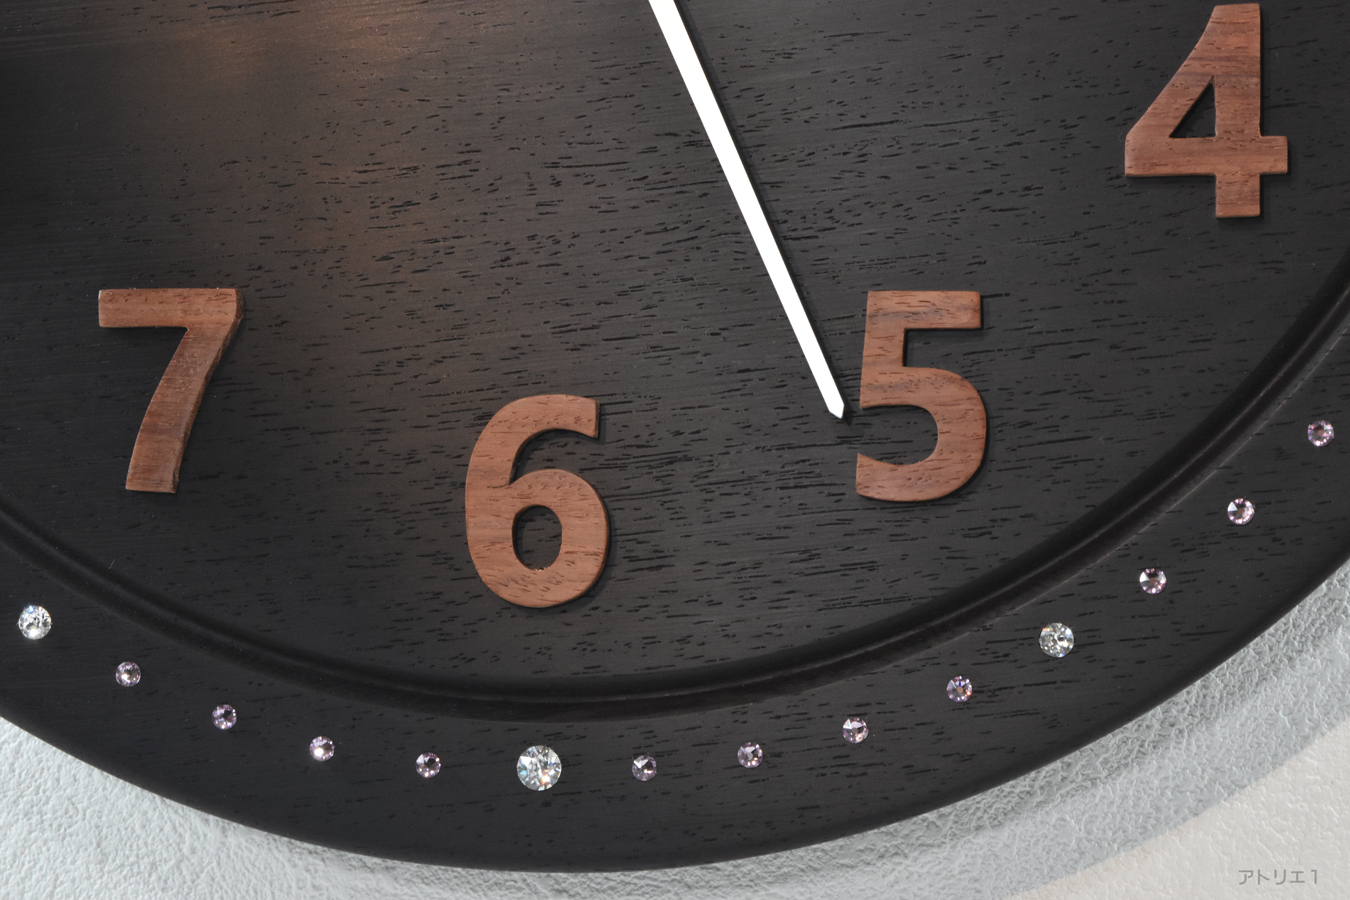 ウエンジの黒い色合いに合うよう秒・分目盛りには、ライトアメジスト色を使用し、時刻目盛りには、わかりやすいようにクリスタルを用い、12時、3時、6時、9時にはアクセントとして大きめのクリスタルを使用しています。